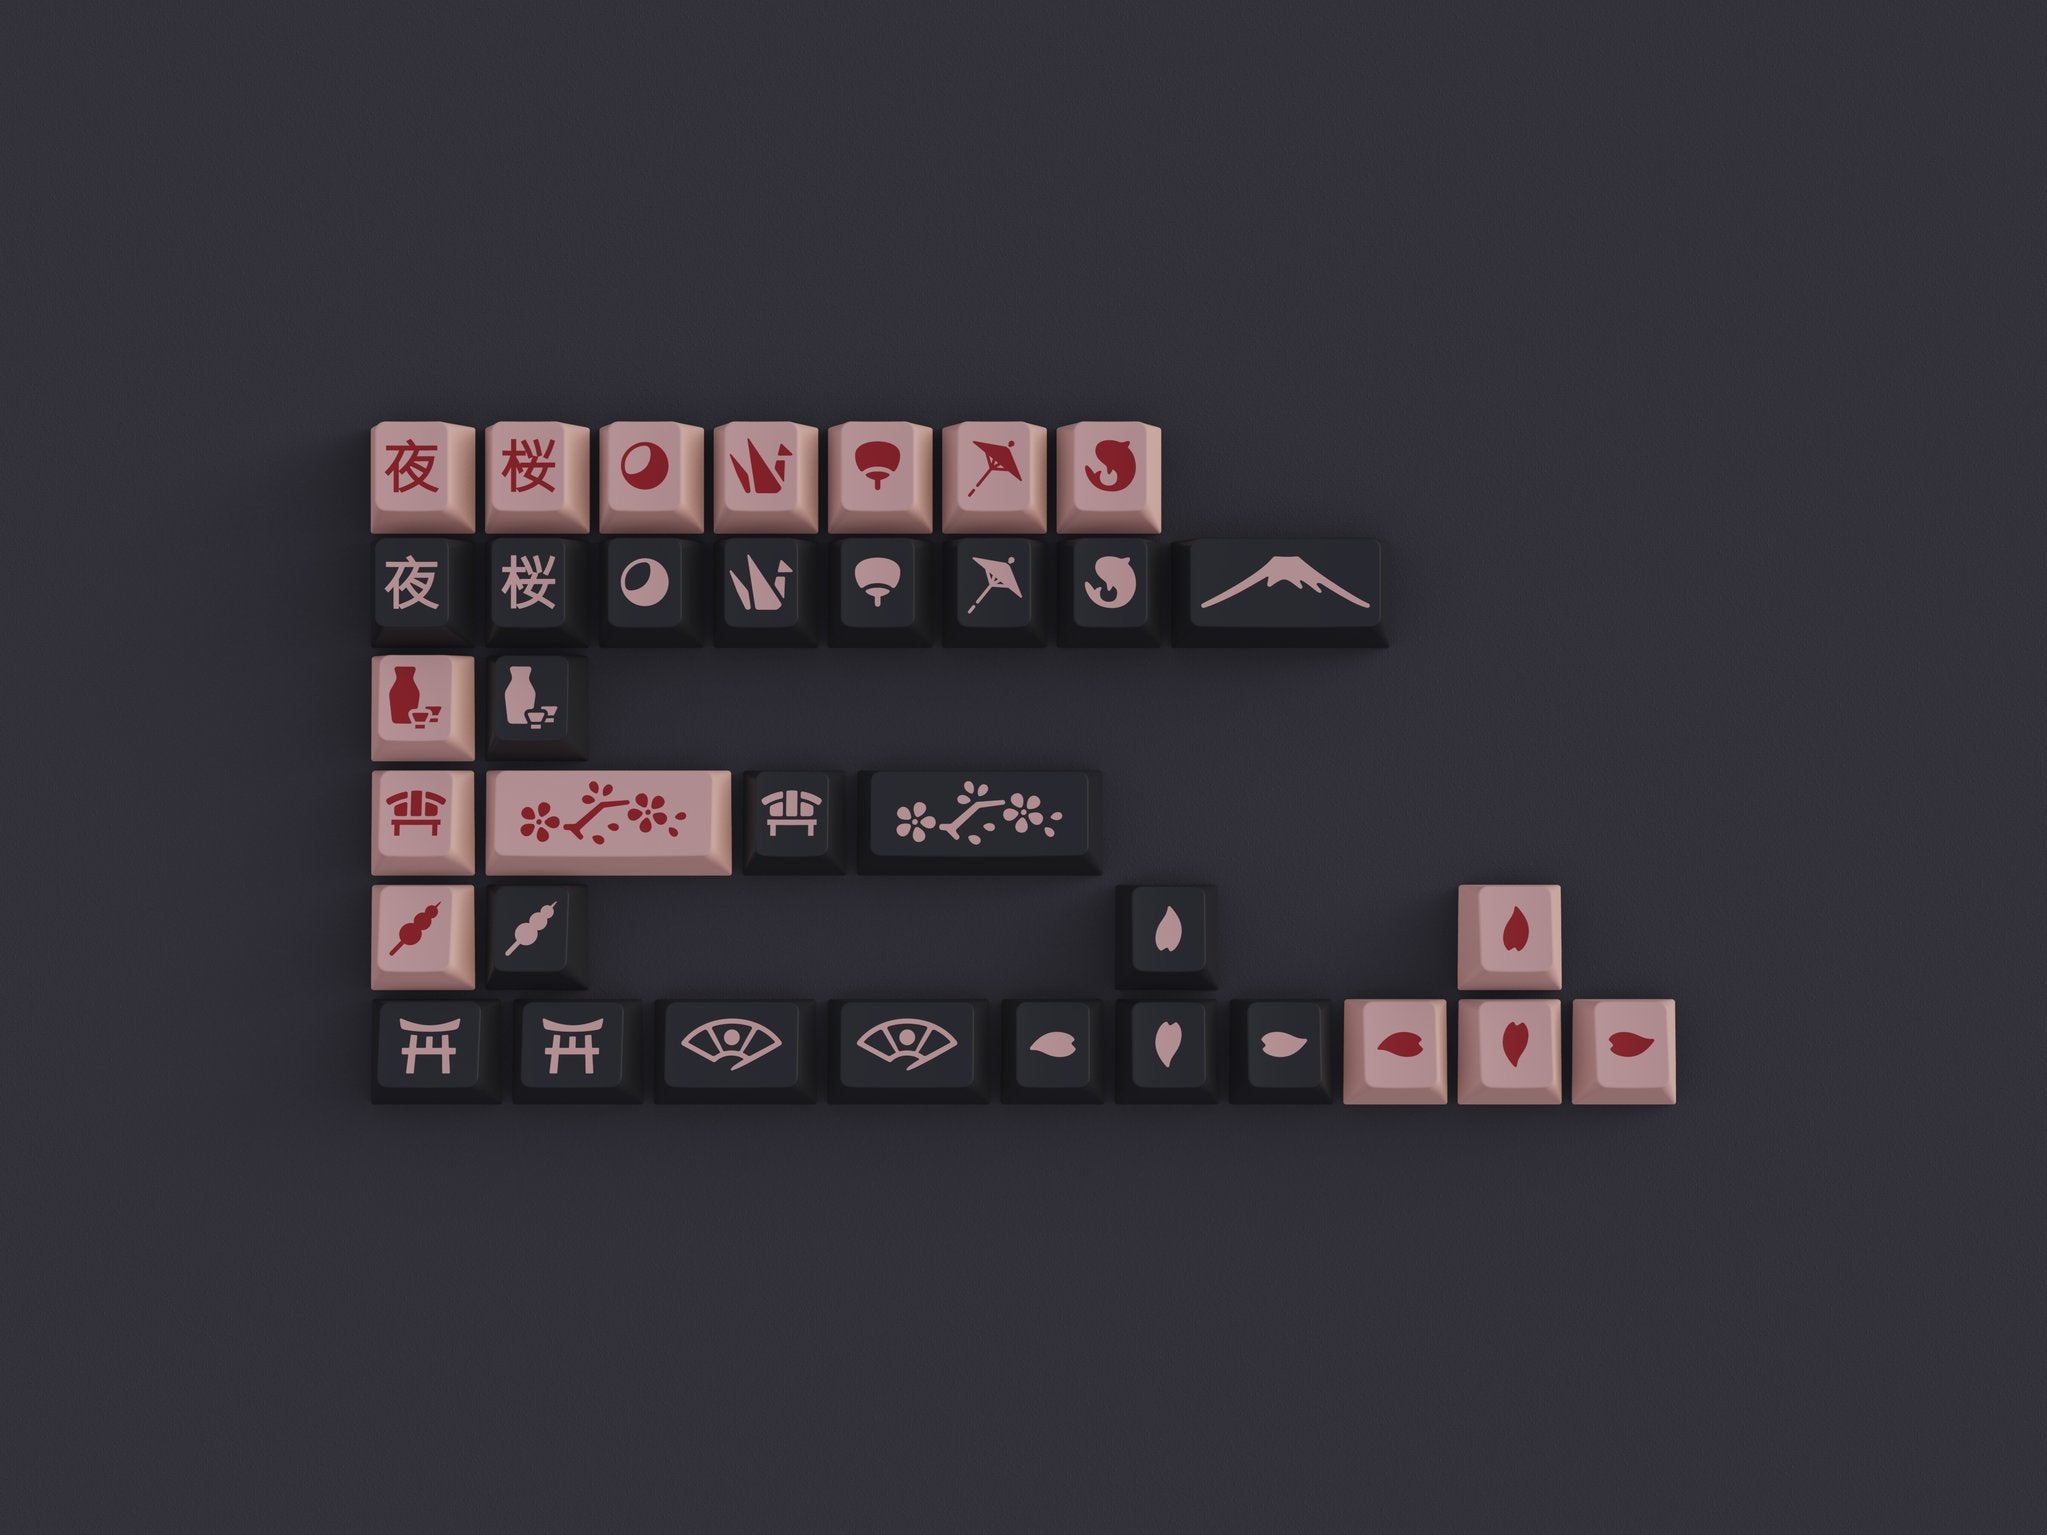 JTK Night Sakura Keycaps